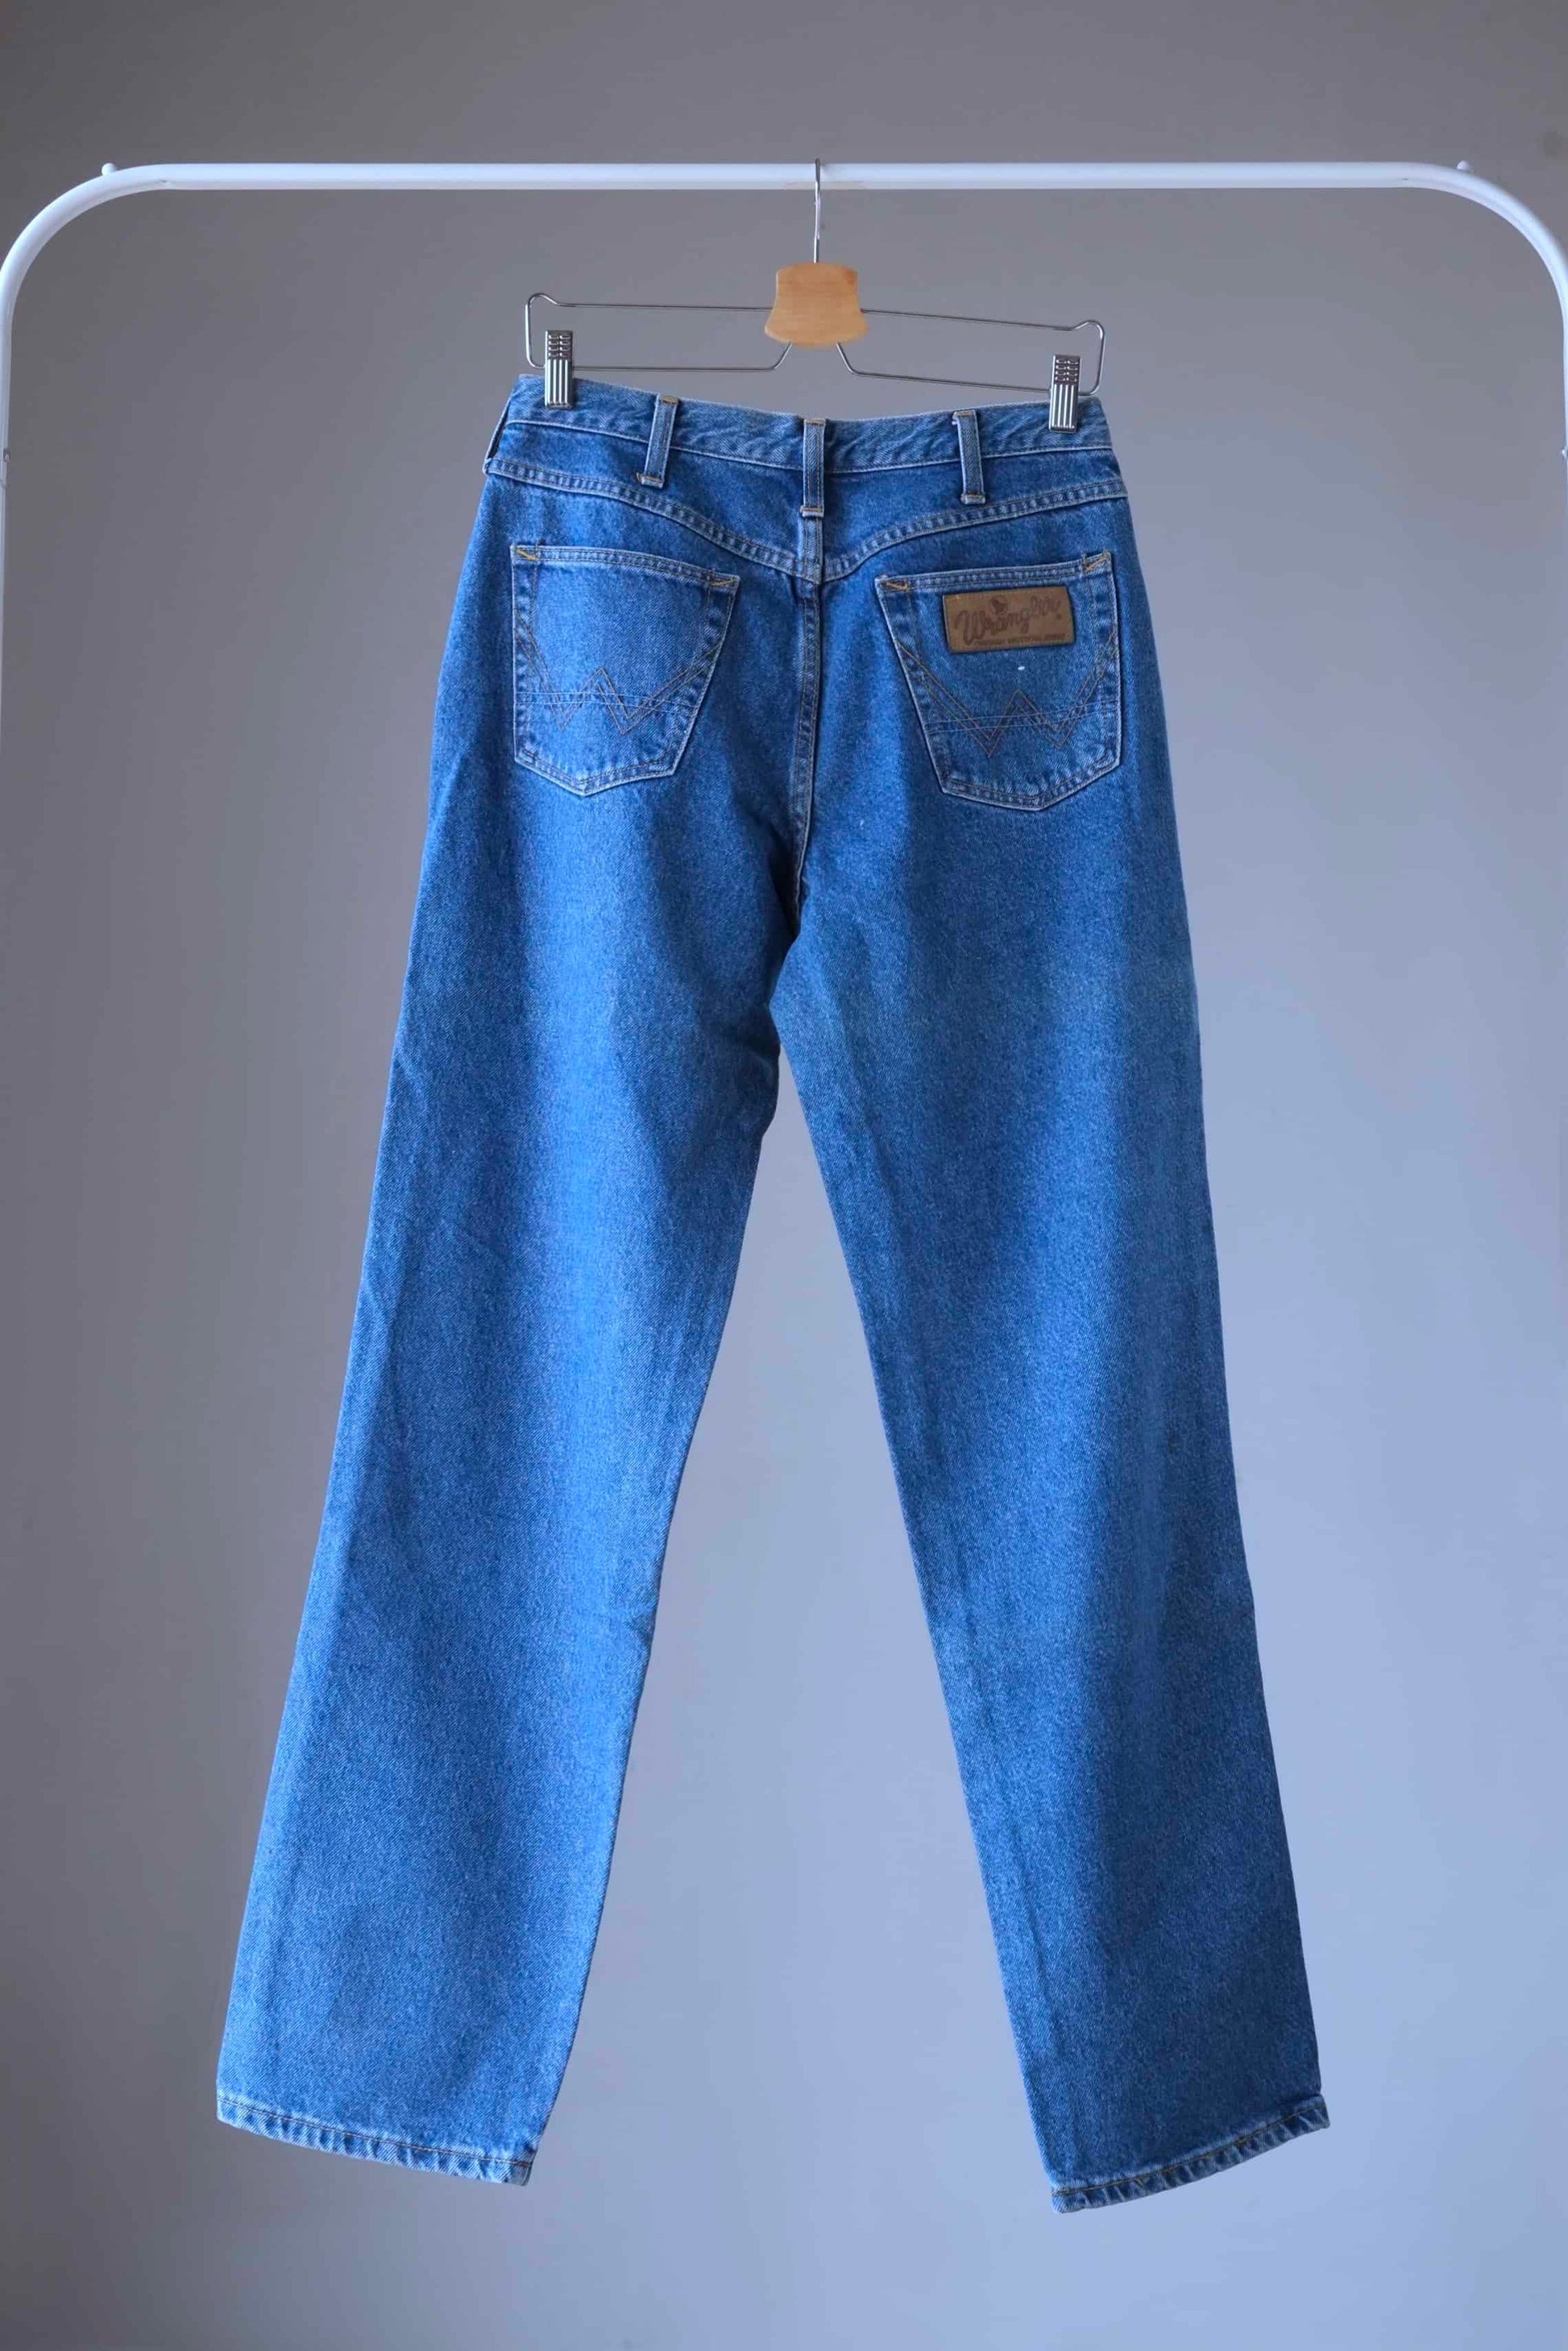 WRANGLER Vintage 90's Jeans Blue Wash on hanger backside